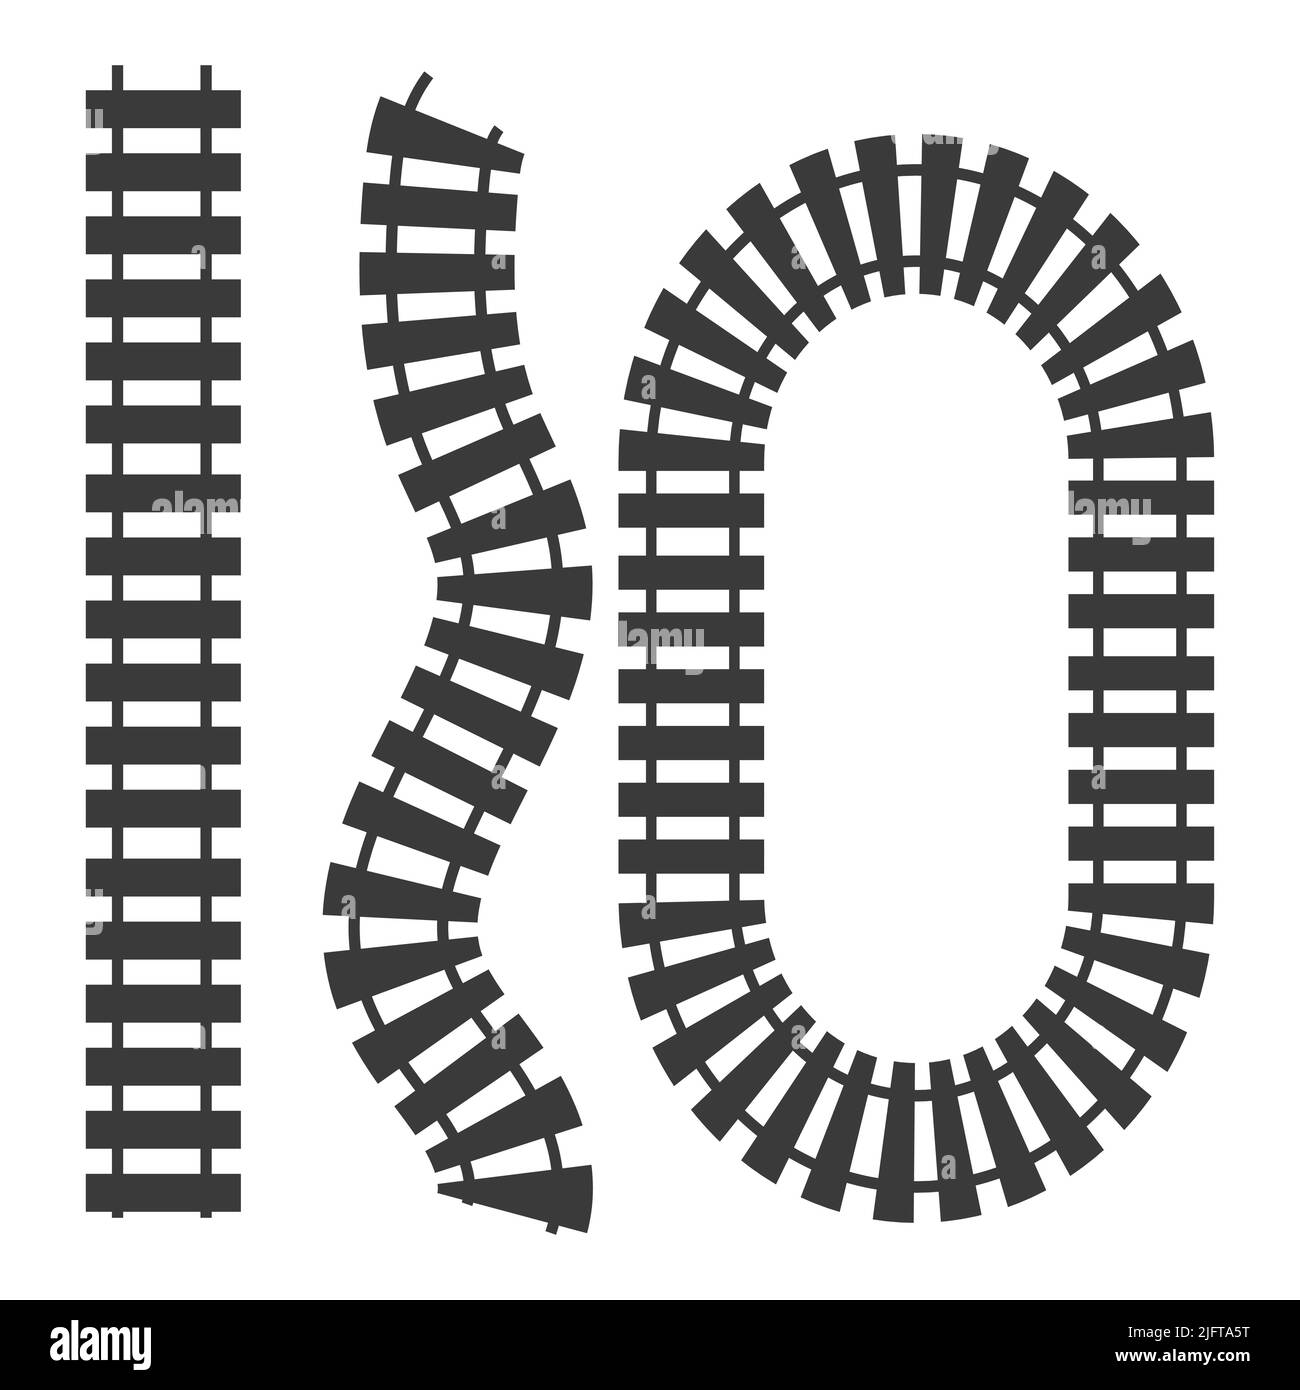 Vista dall'alto della collezione Rail Way, ferrovia nera in stile cartoon isolata su sfondo bianco. Linea curva set ferrovia. Silhouette. Illustrazione vettoriale Illustrazione Vettoriale